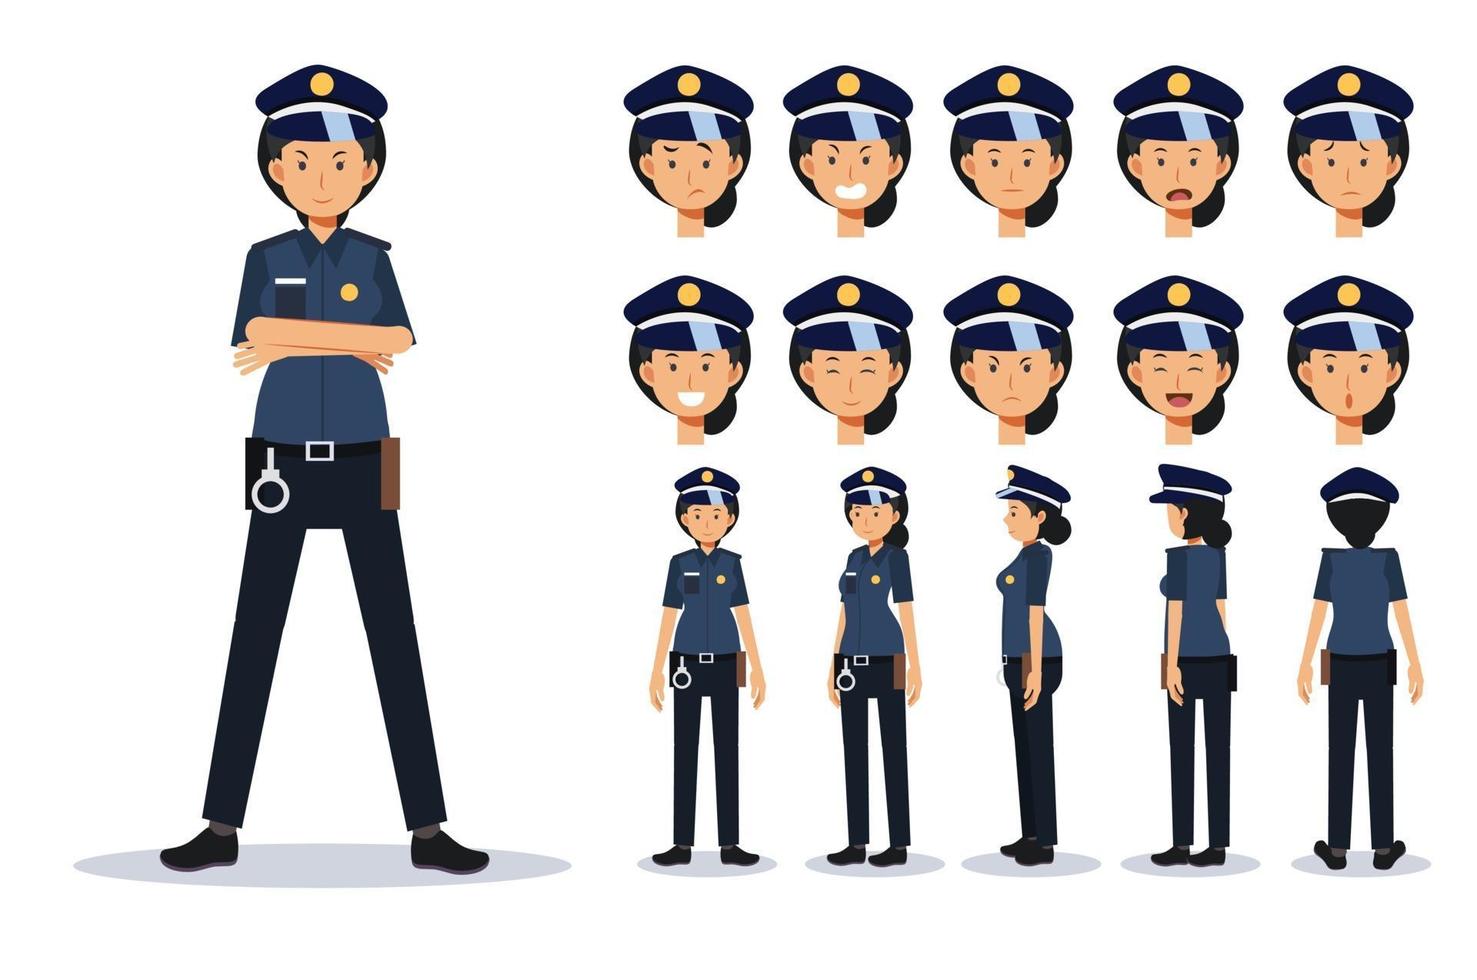 mujer policía en varios puntos de vista, estilo de dibujos animados.  3374179 Vector en Vecteezy